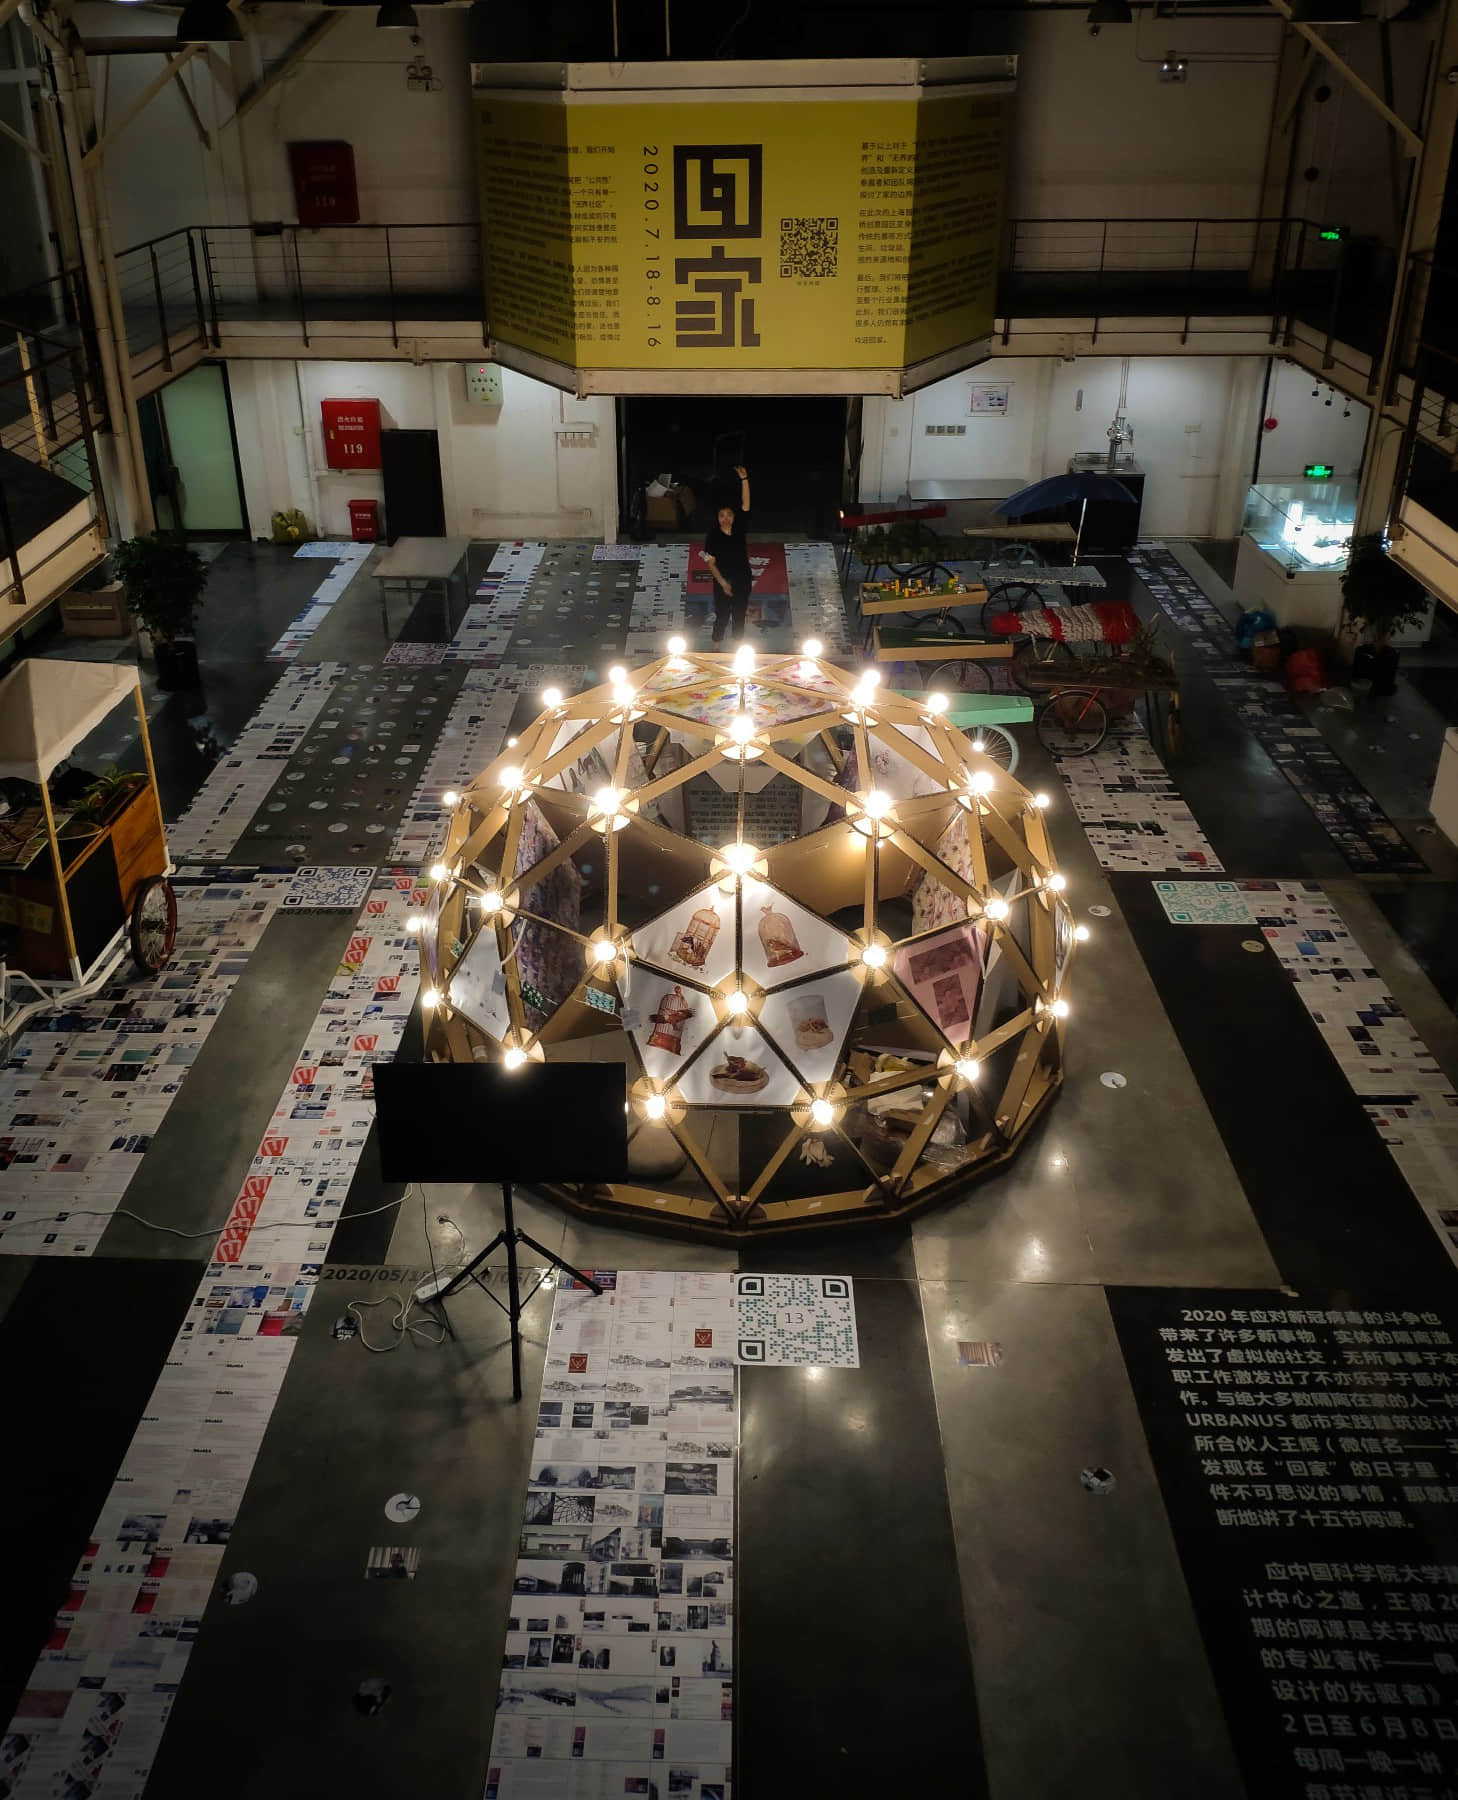 N95之家——上海“回家”展中展（朱涛建筑工作室，2020.7）——“空间试验场”：工作室有选择性地参与国内外城市、建筑与艺术展览，探索形式语言可能性，推广进步空间话语。